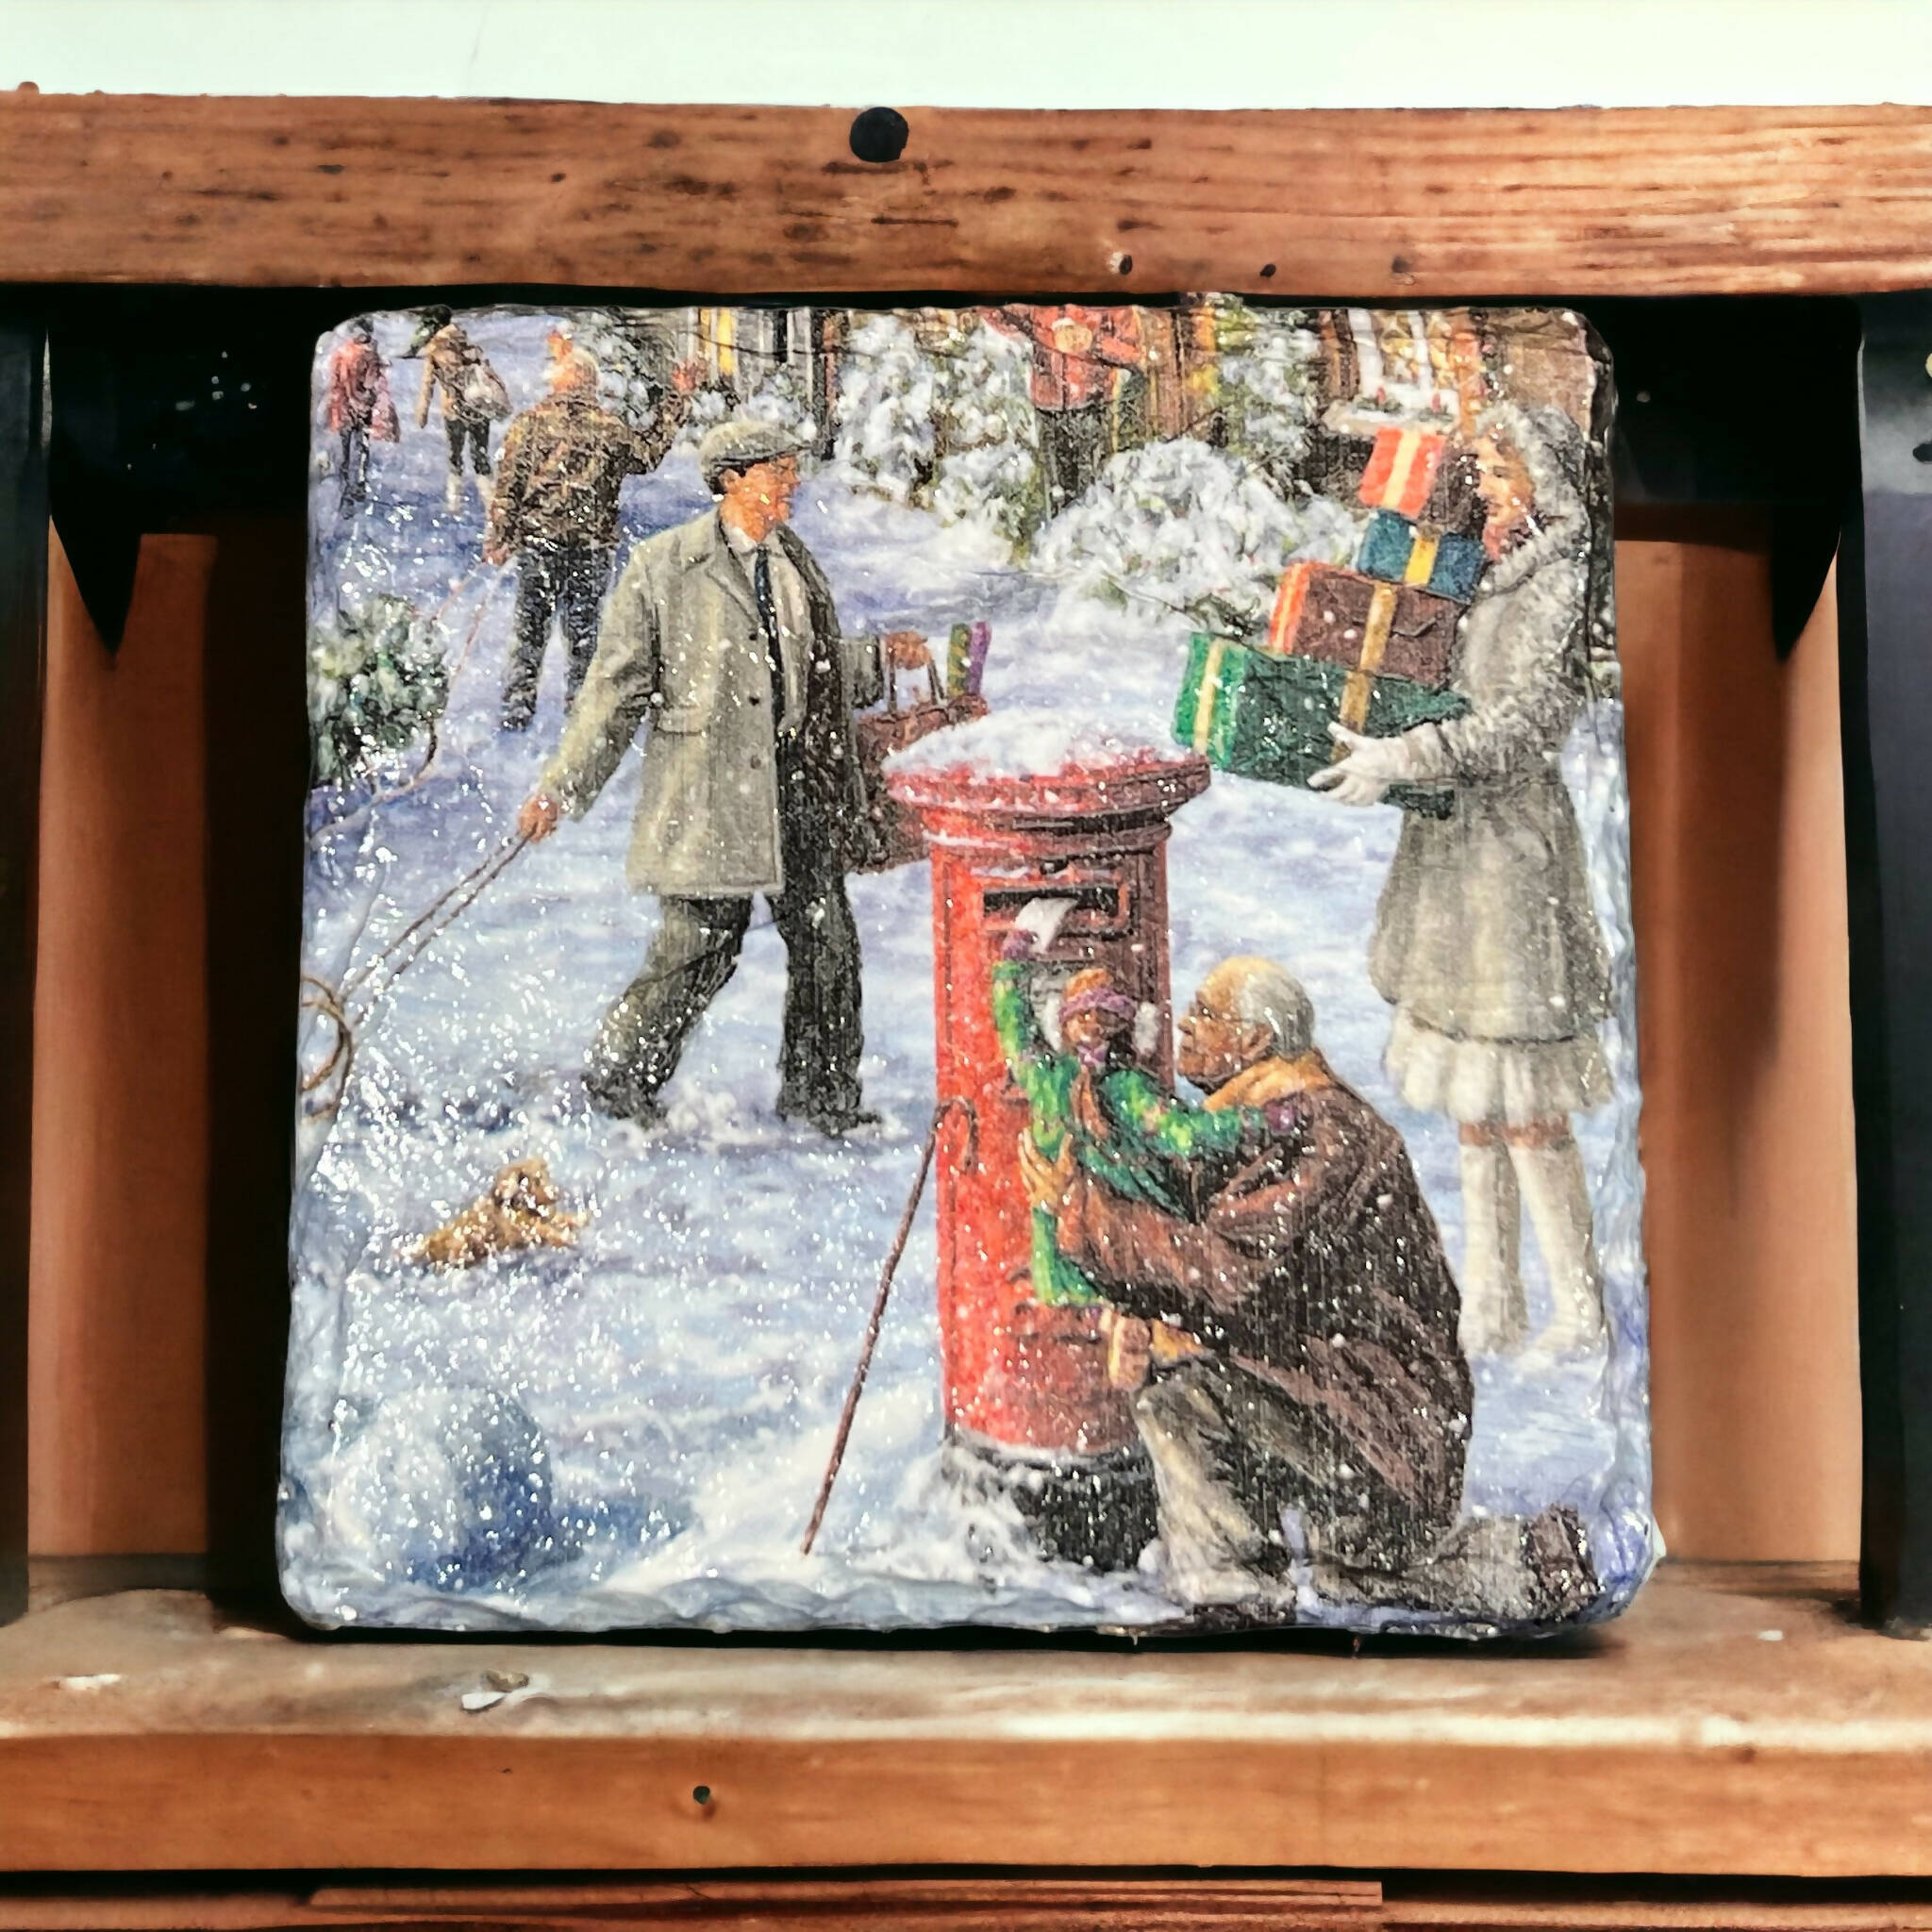 Festive Christmas present postal coaster, posting parcels drinks coaster, stocking filler gift